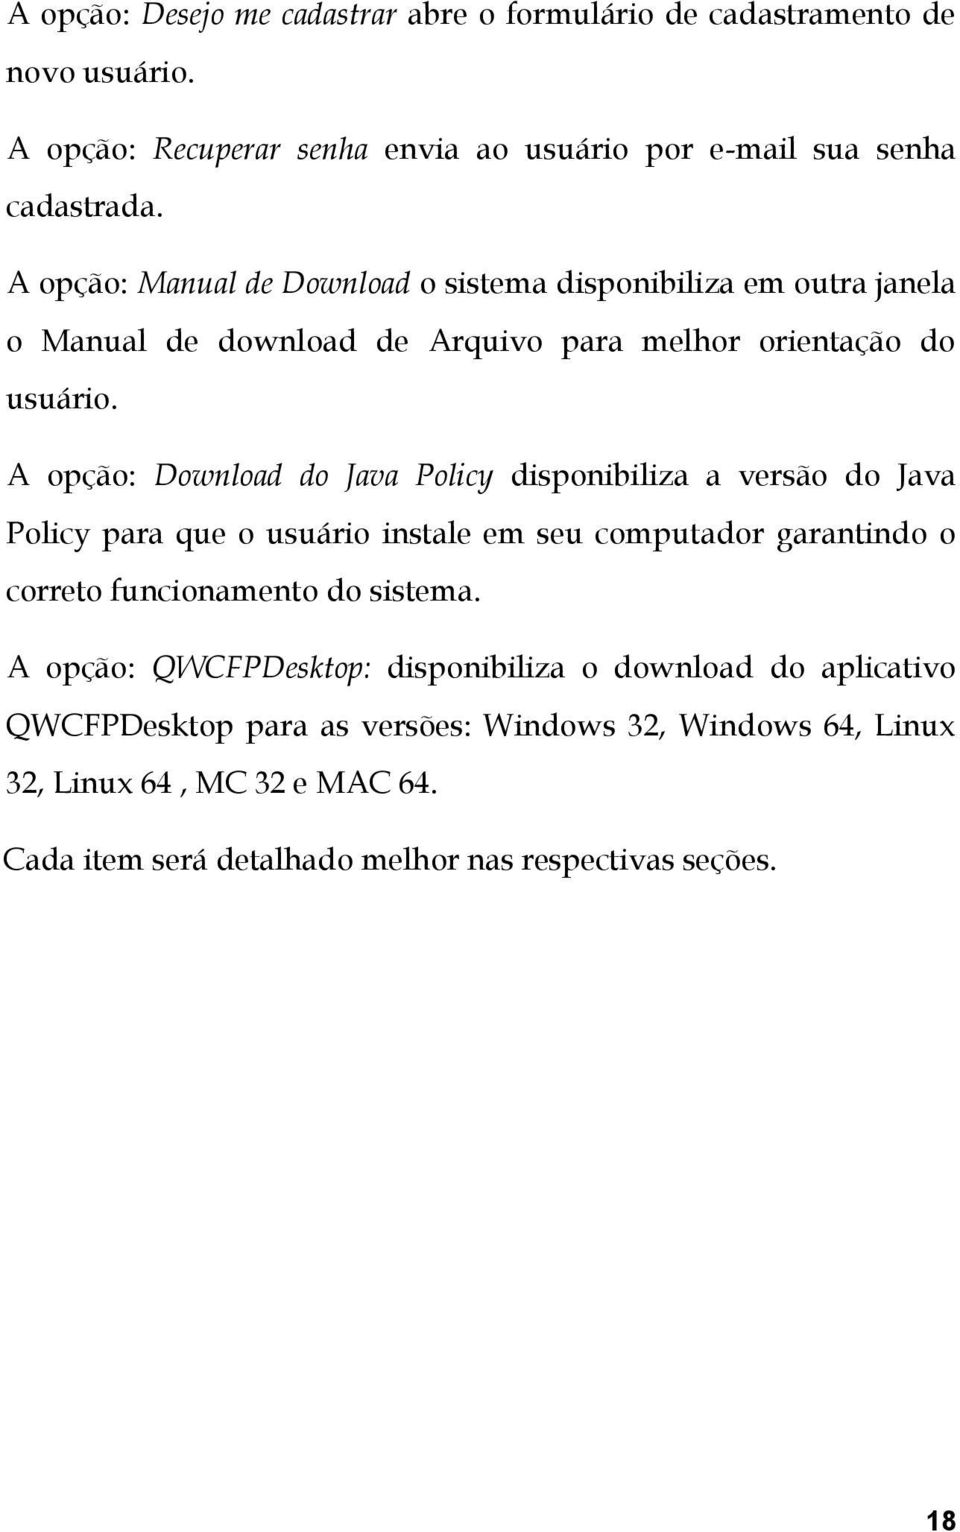 A opção: Download do Java Policy disponibiliza a versão do Java Policy para que o usuário instale em seu computador garantindo o correto funcionamento do sistema.